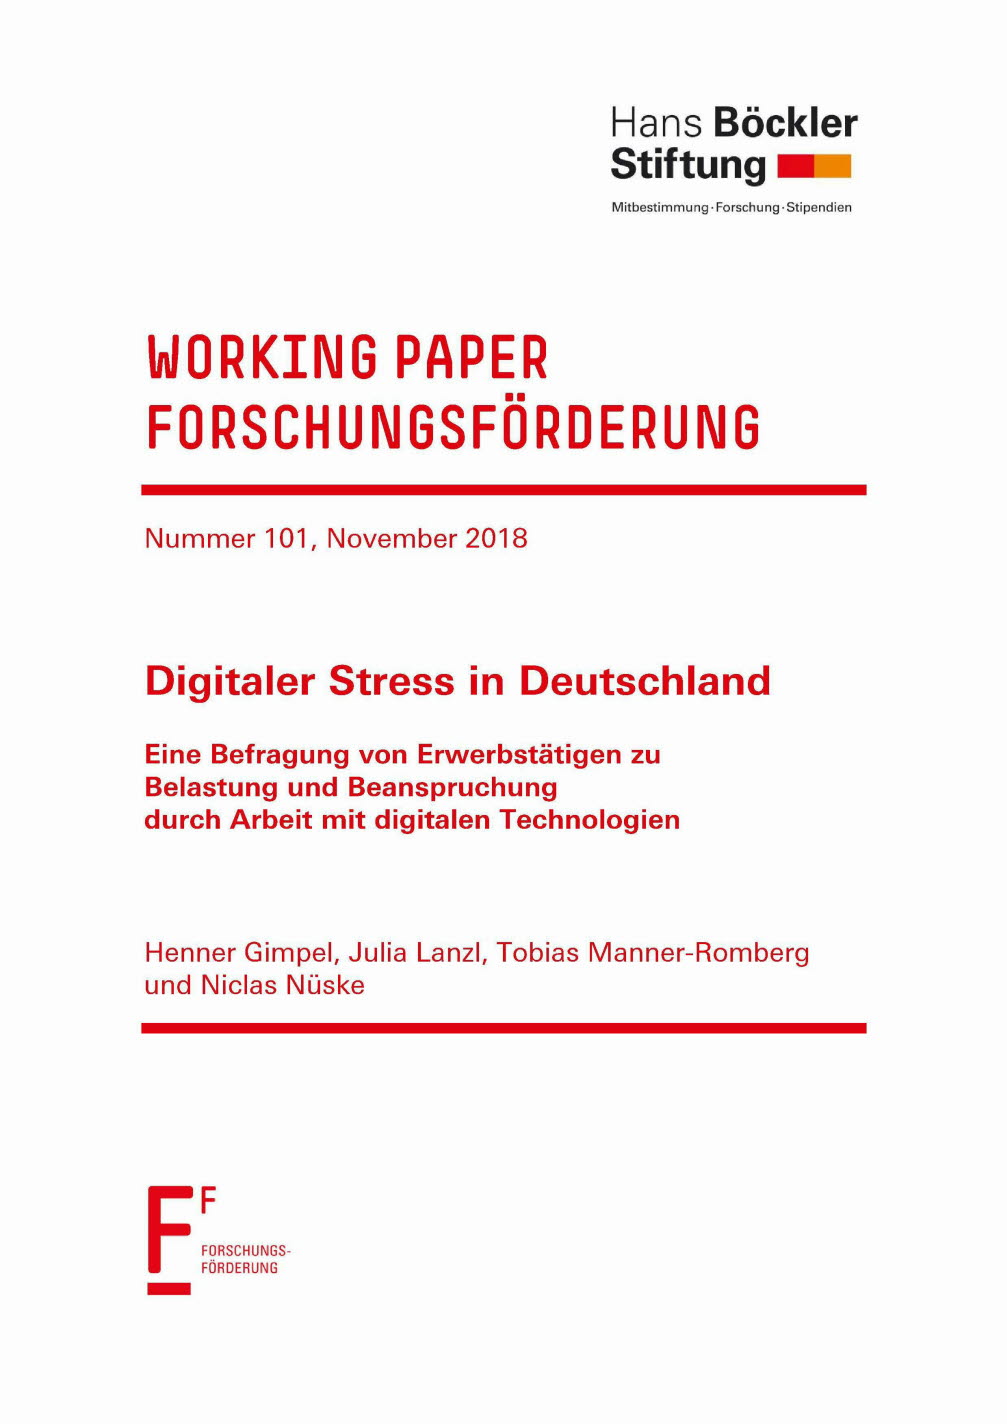 Digitaler Stress in Deutschland